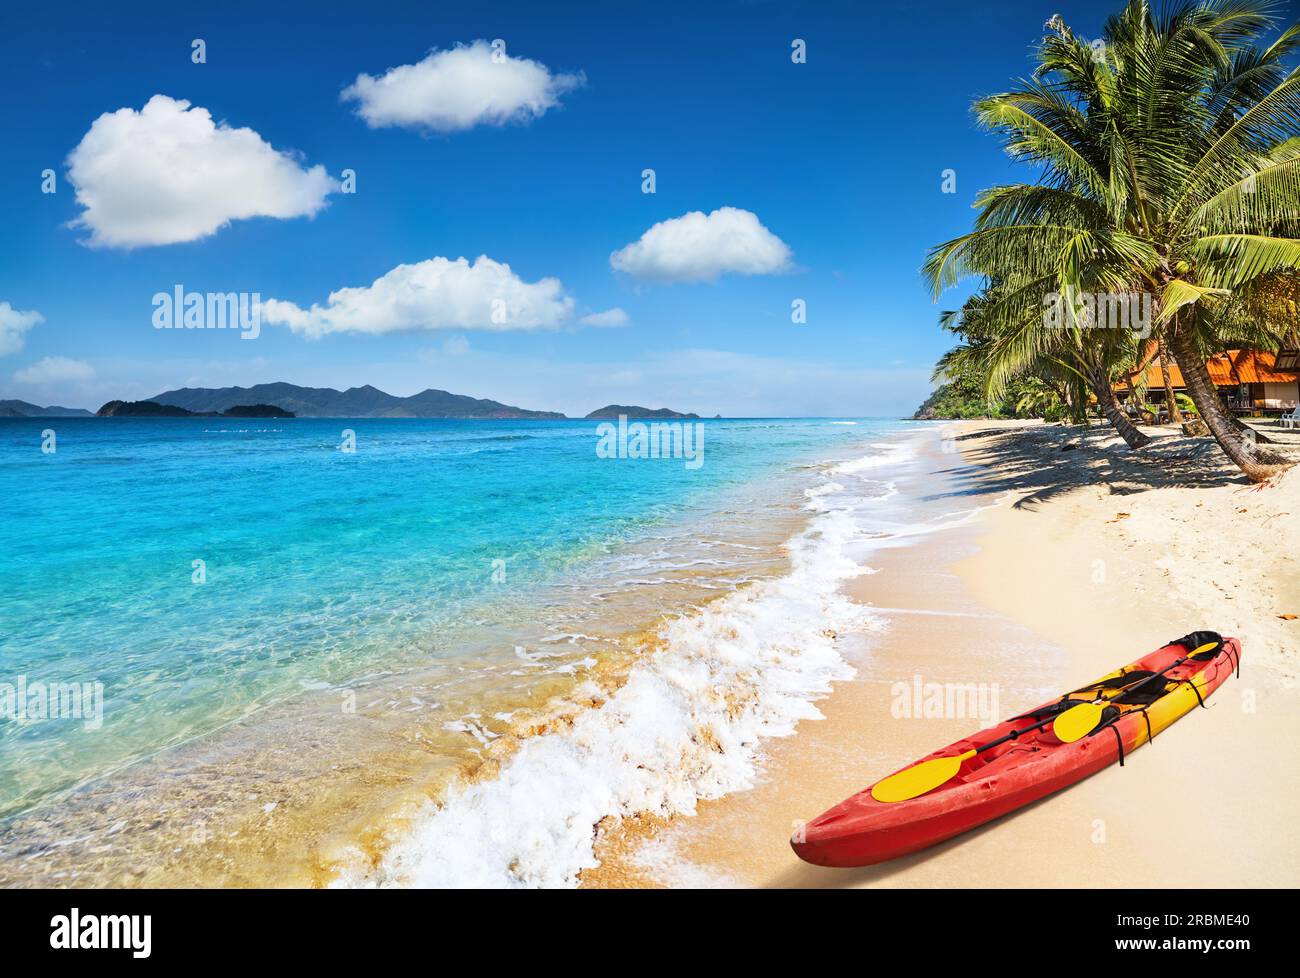 Playa tropical paradisíaca con palmeras y mar claro Foto de stock